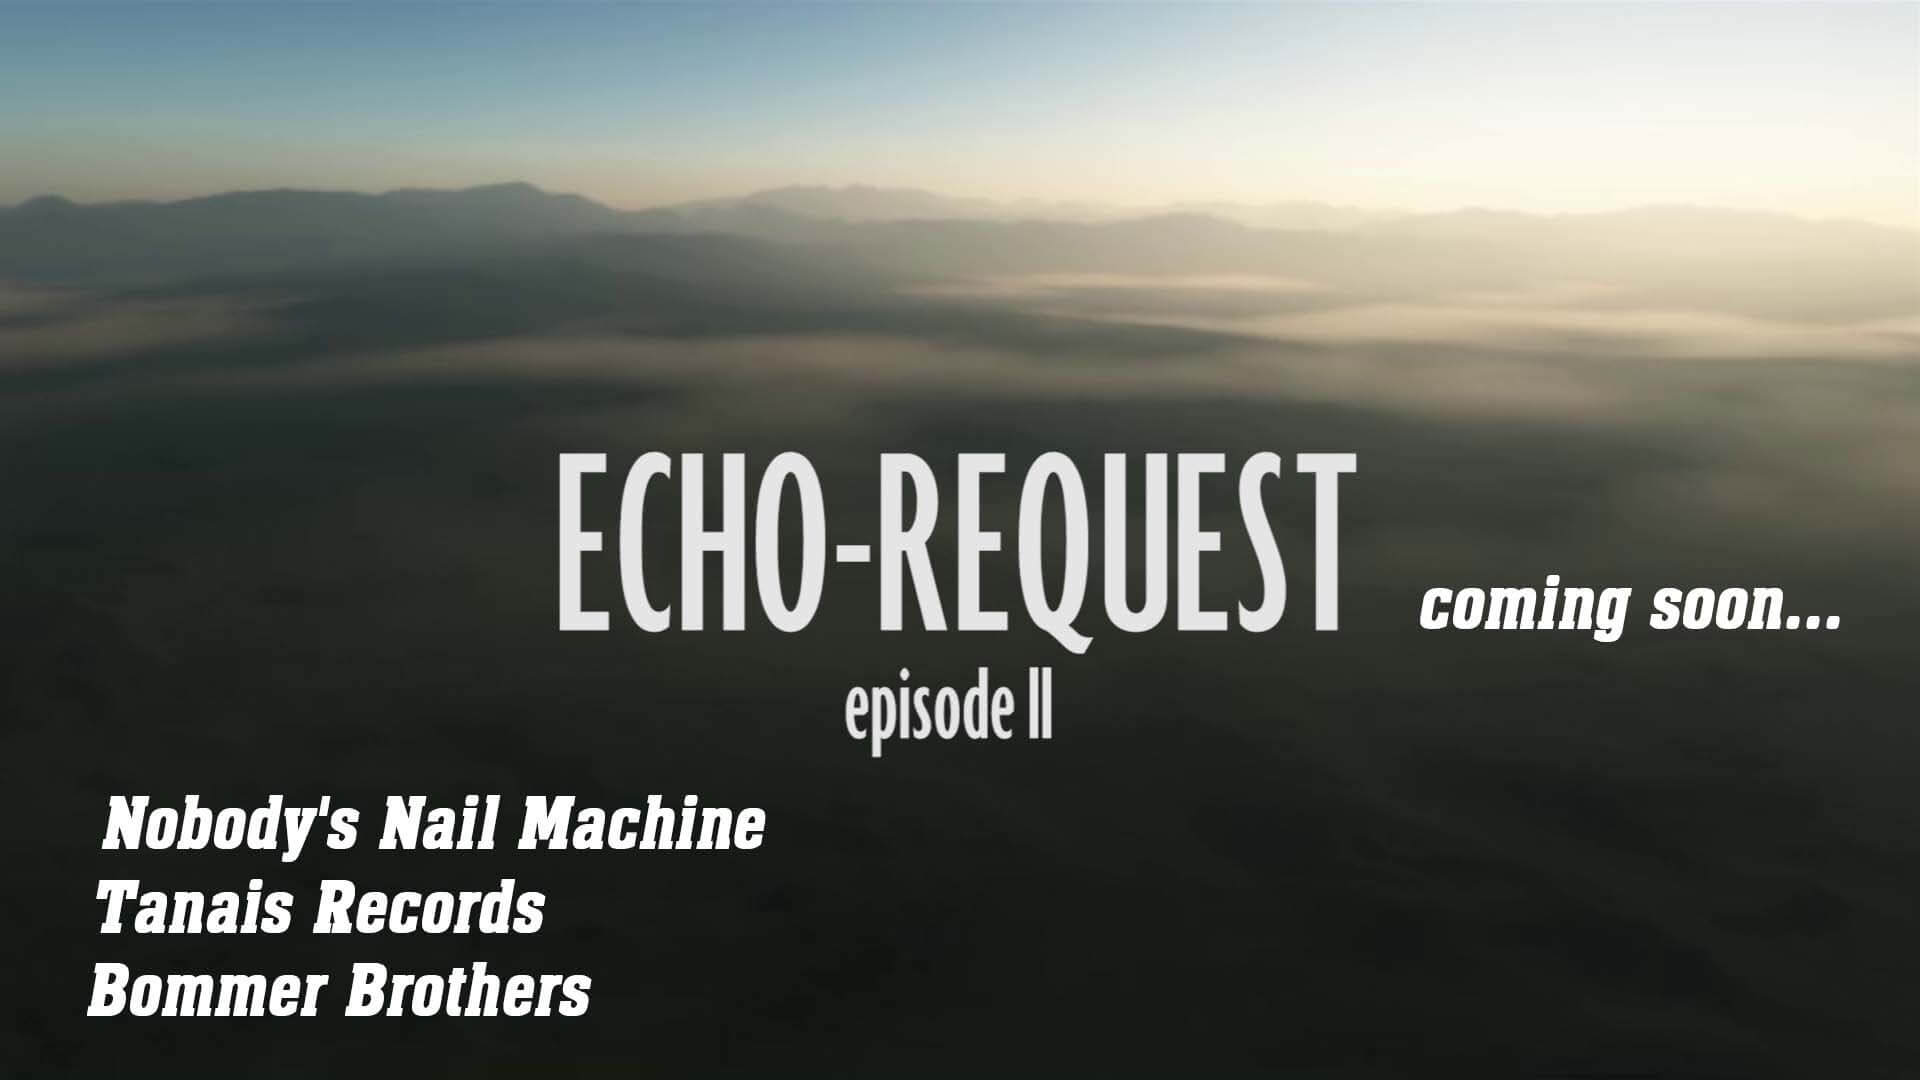 echo request trailer 2 -